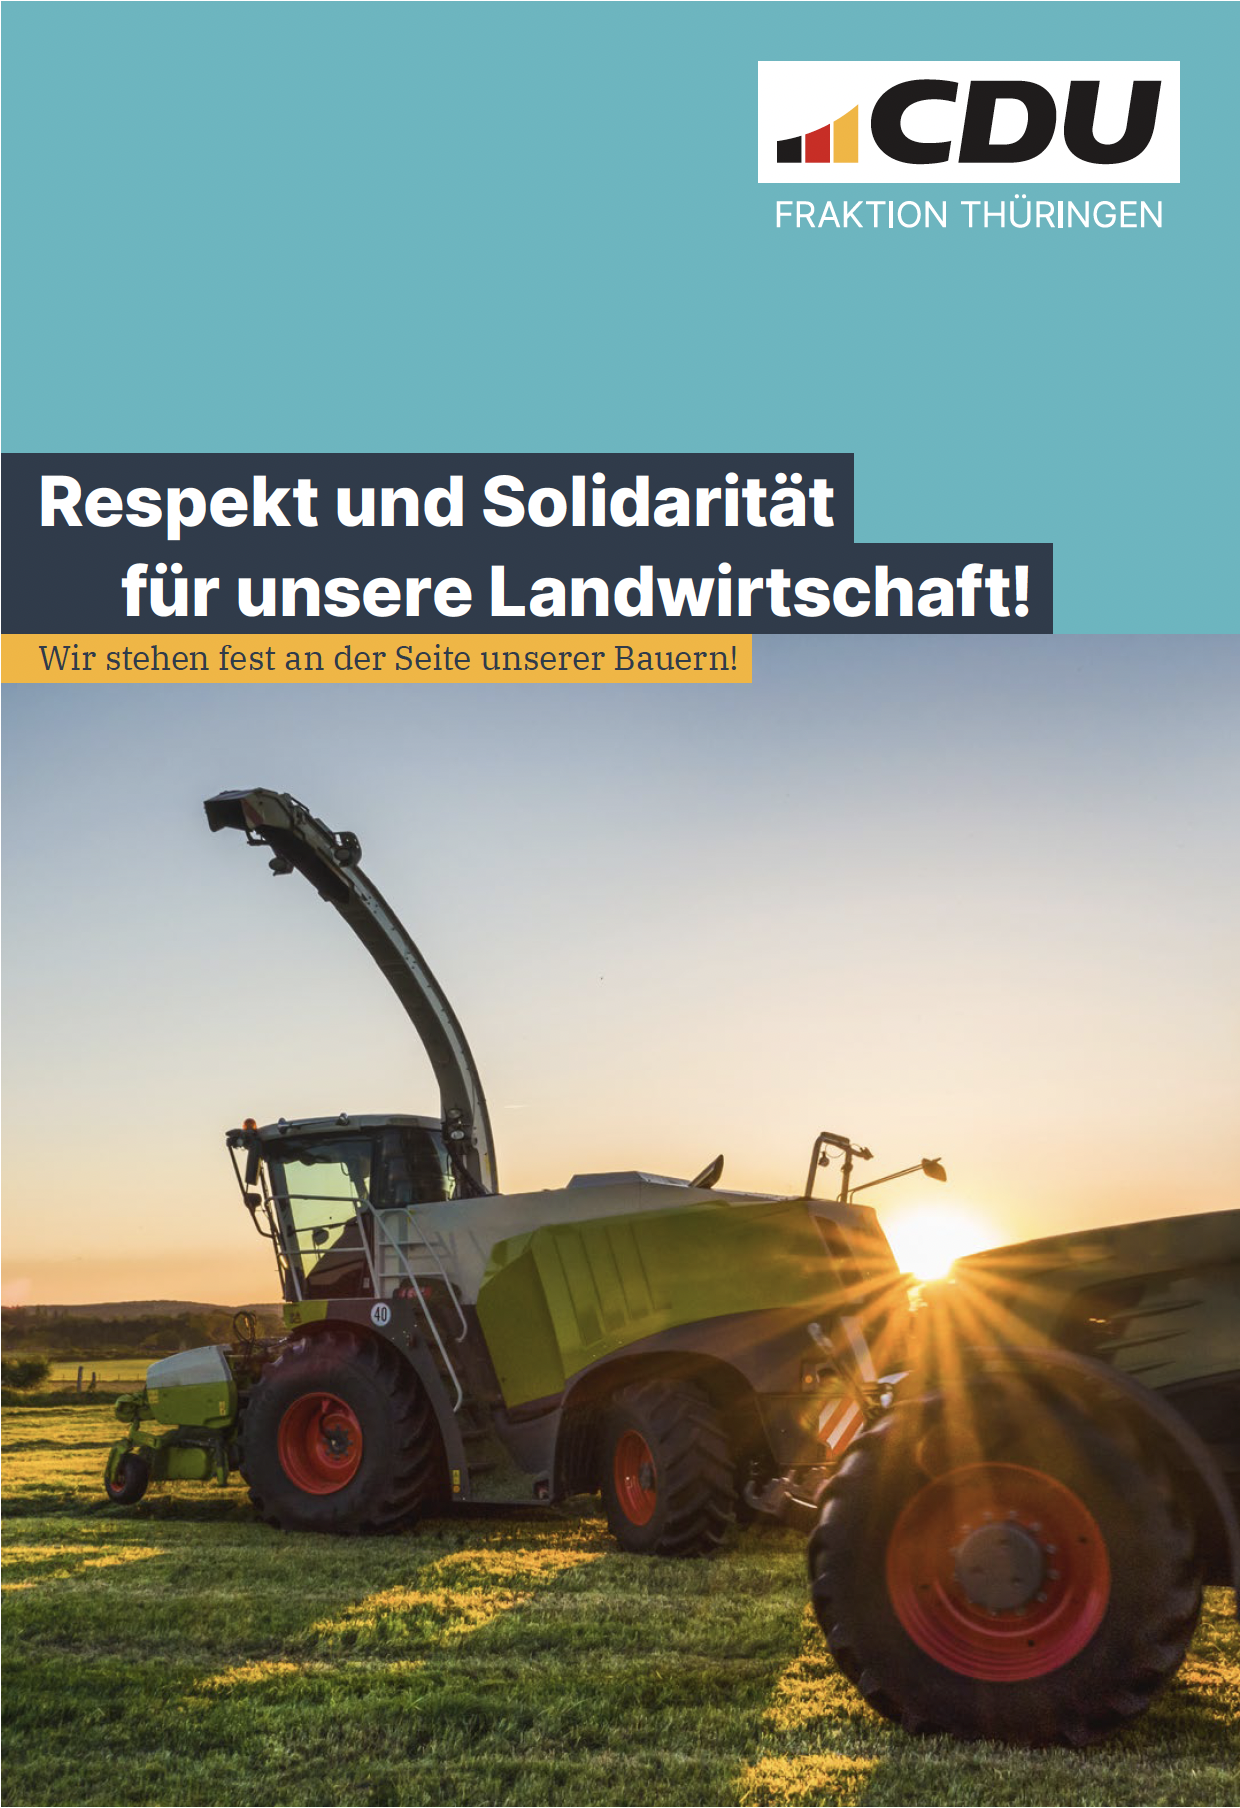 Respekt und Solidarität für unsere Landwirtschaft!